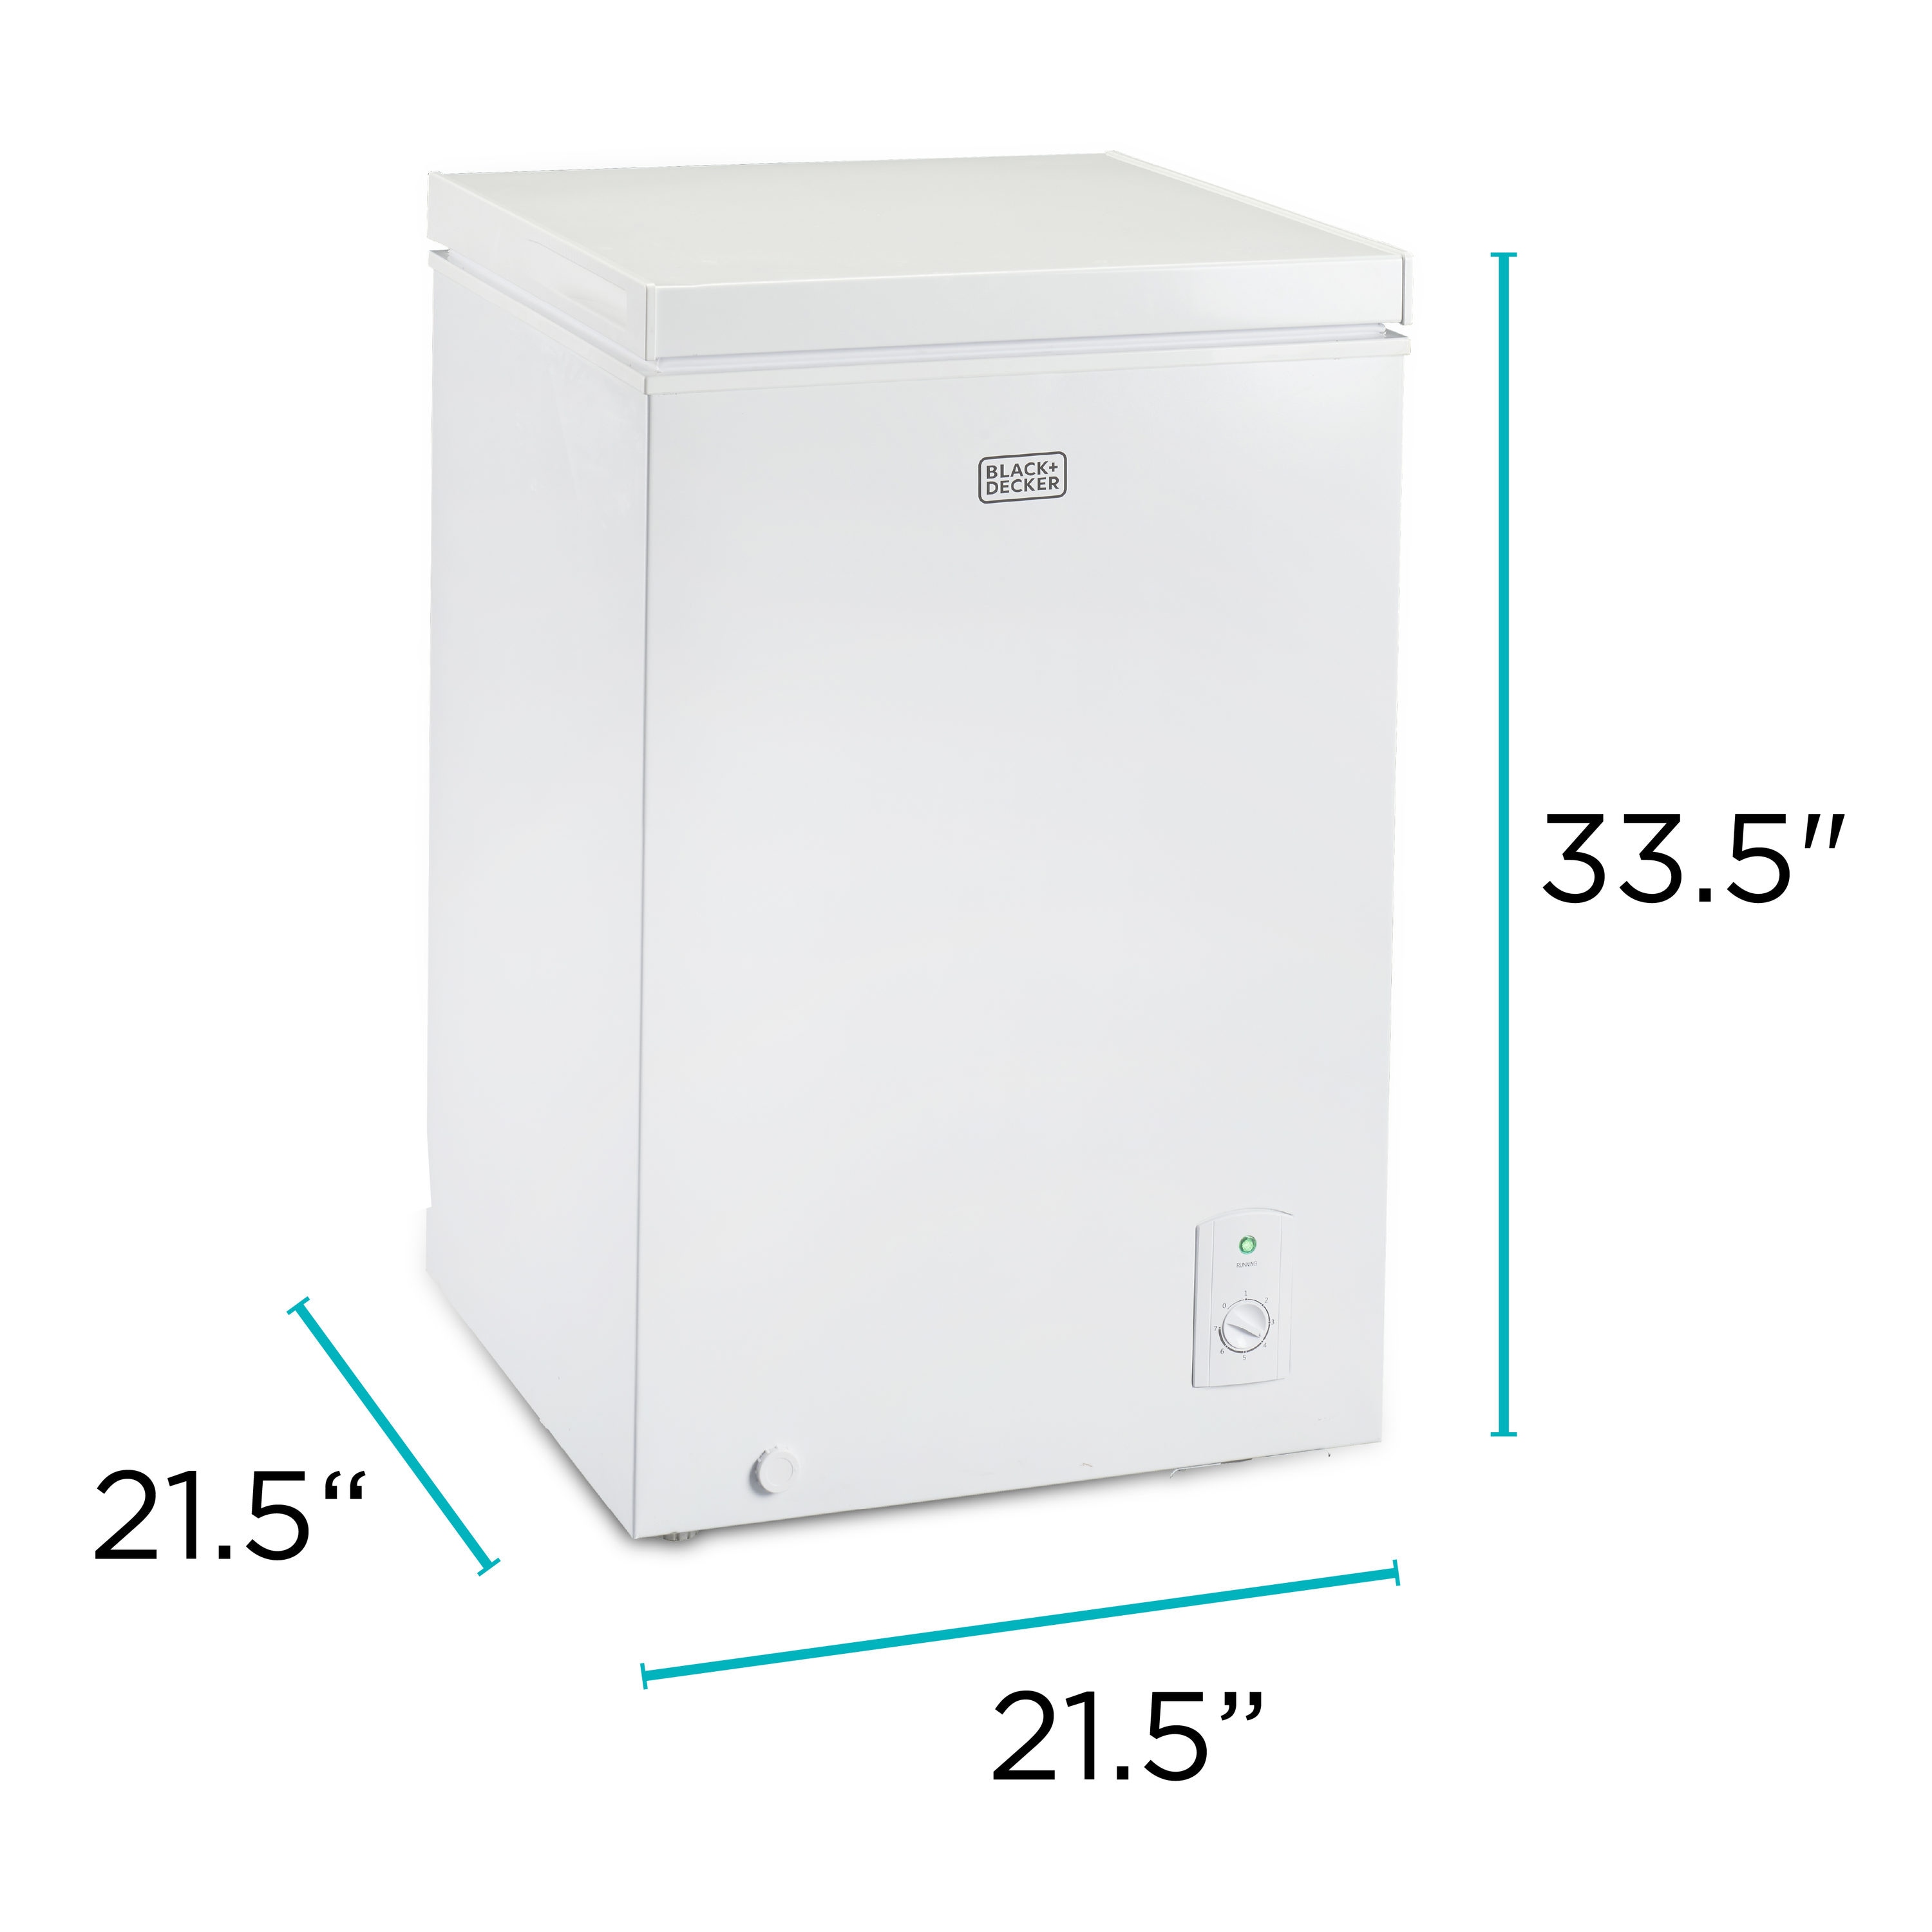 Black & Decker 5 cubic foot chest freezer - appliances - by owner - sale -  craigslist